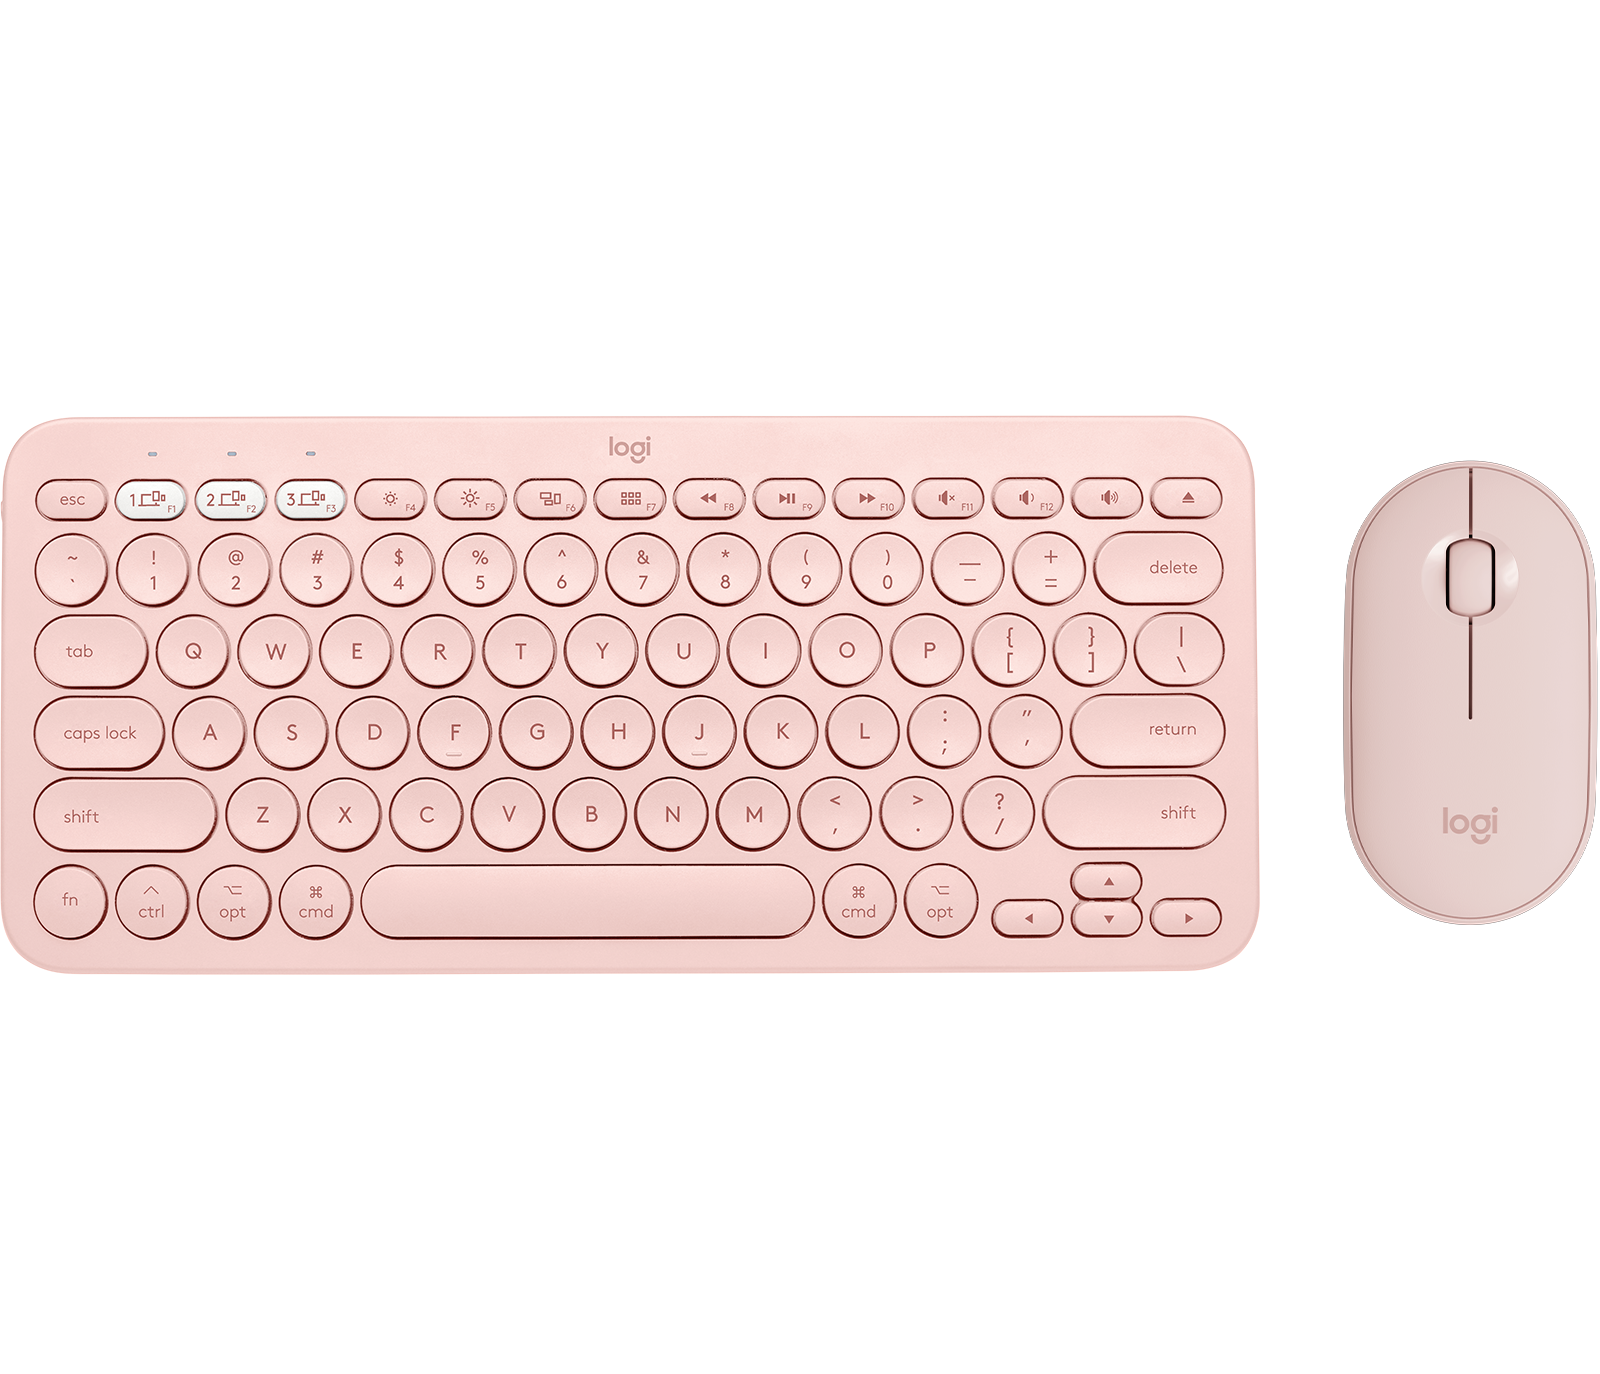 Logitech K380 For Mac M350 Wireless Keyboard Mouse Combo